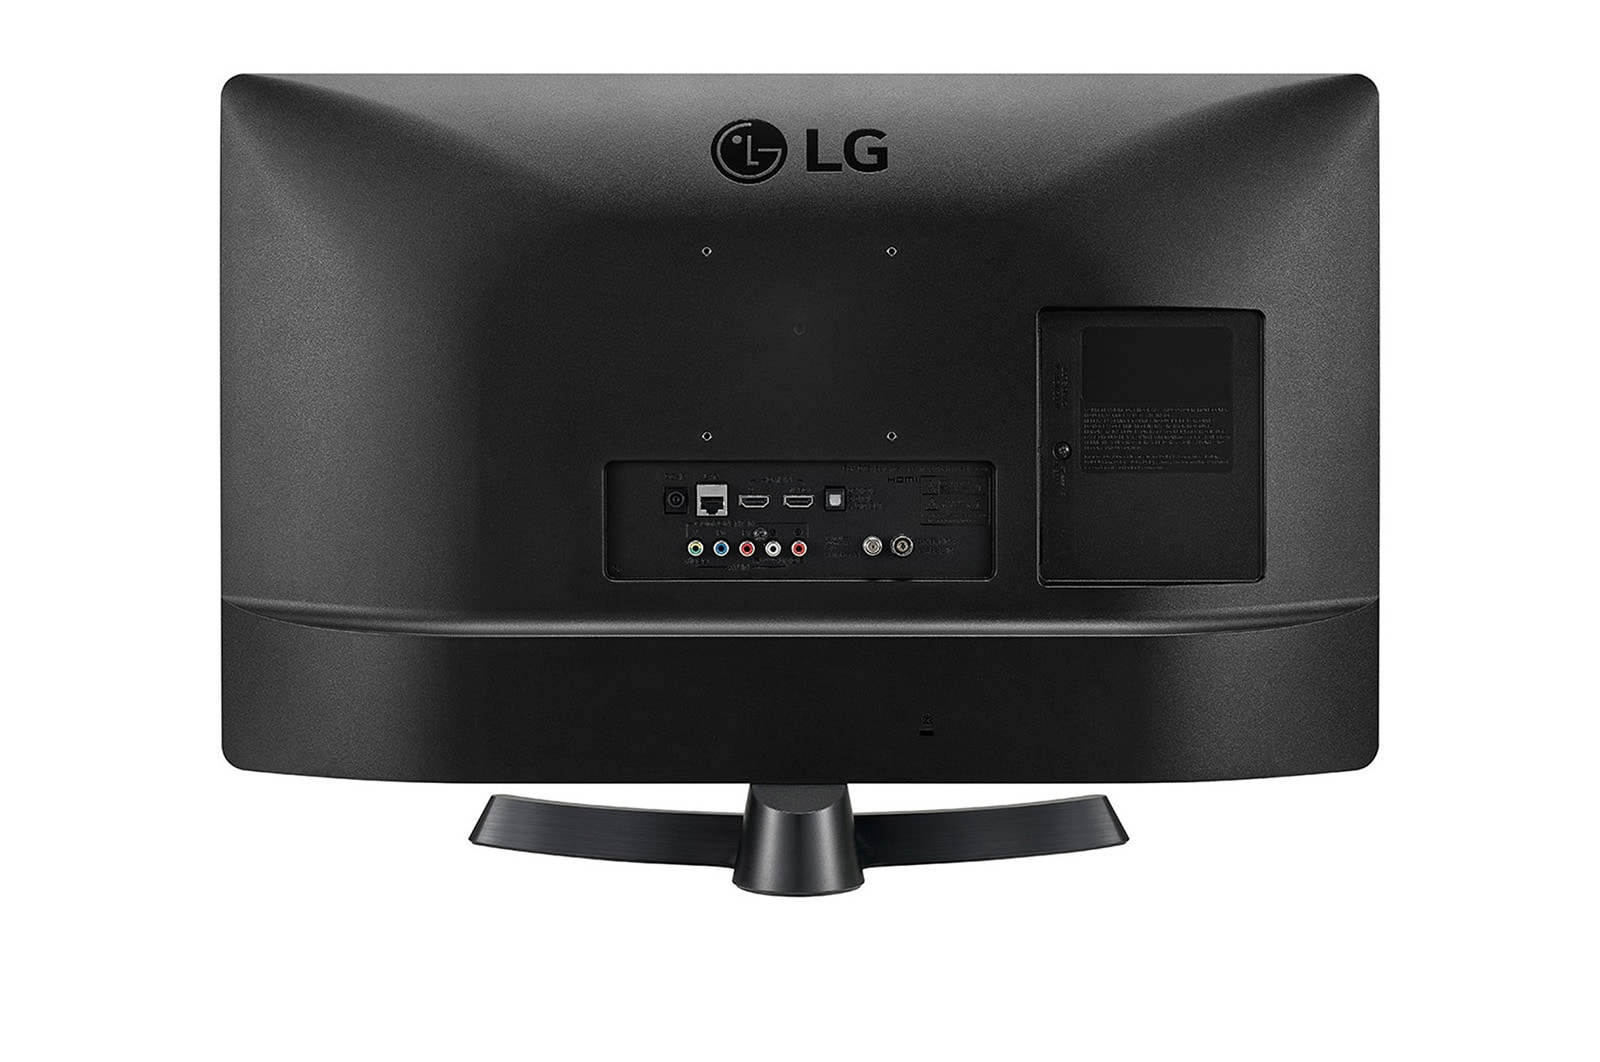 LED TV LG 28TN515S-PZ